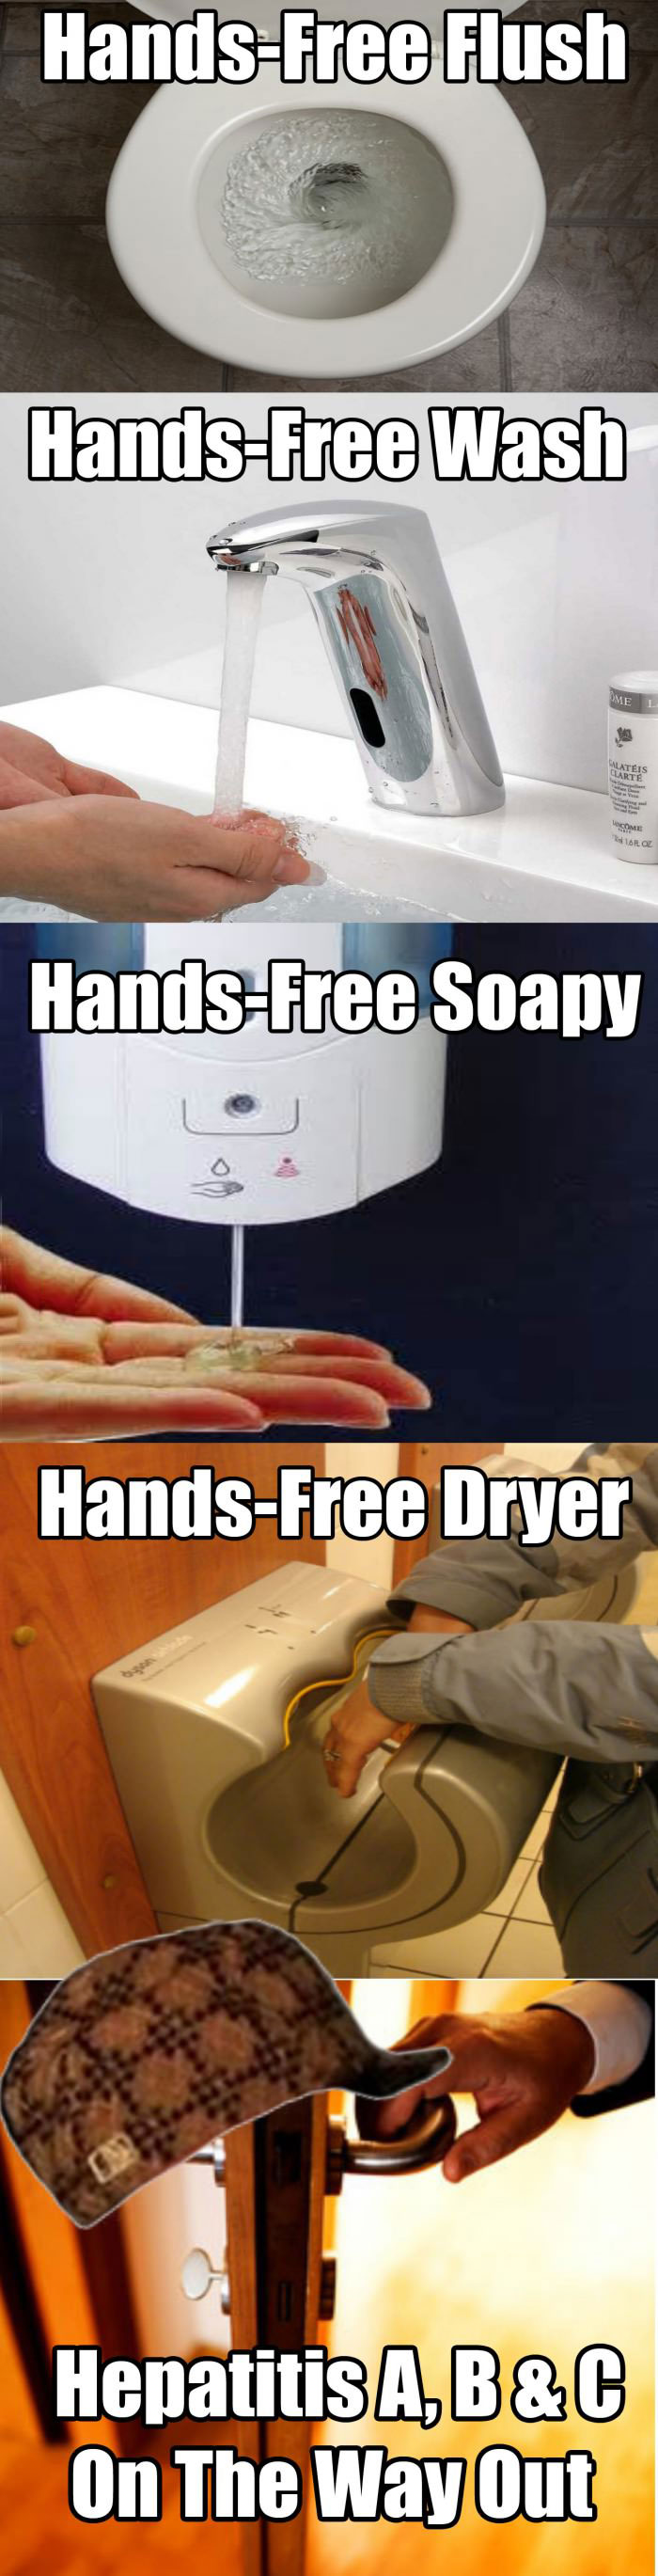 hands free flush, wash, soap, dryer, door handle